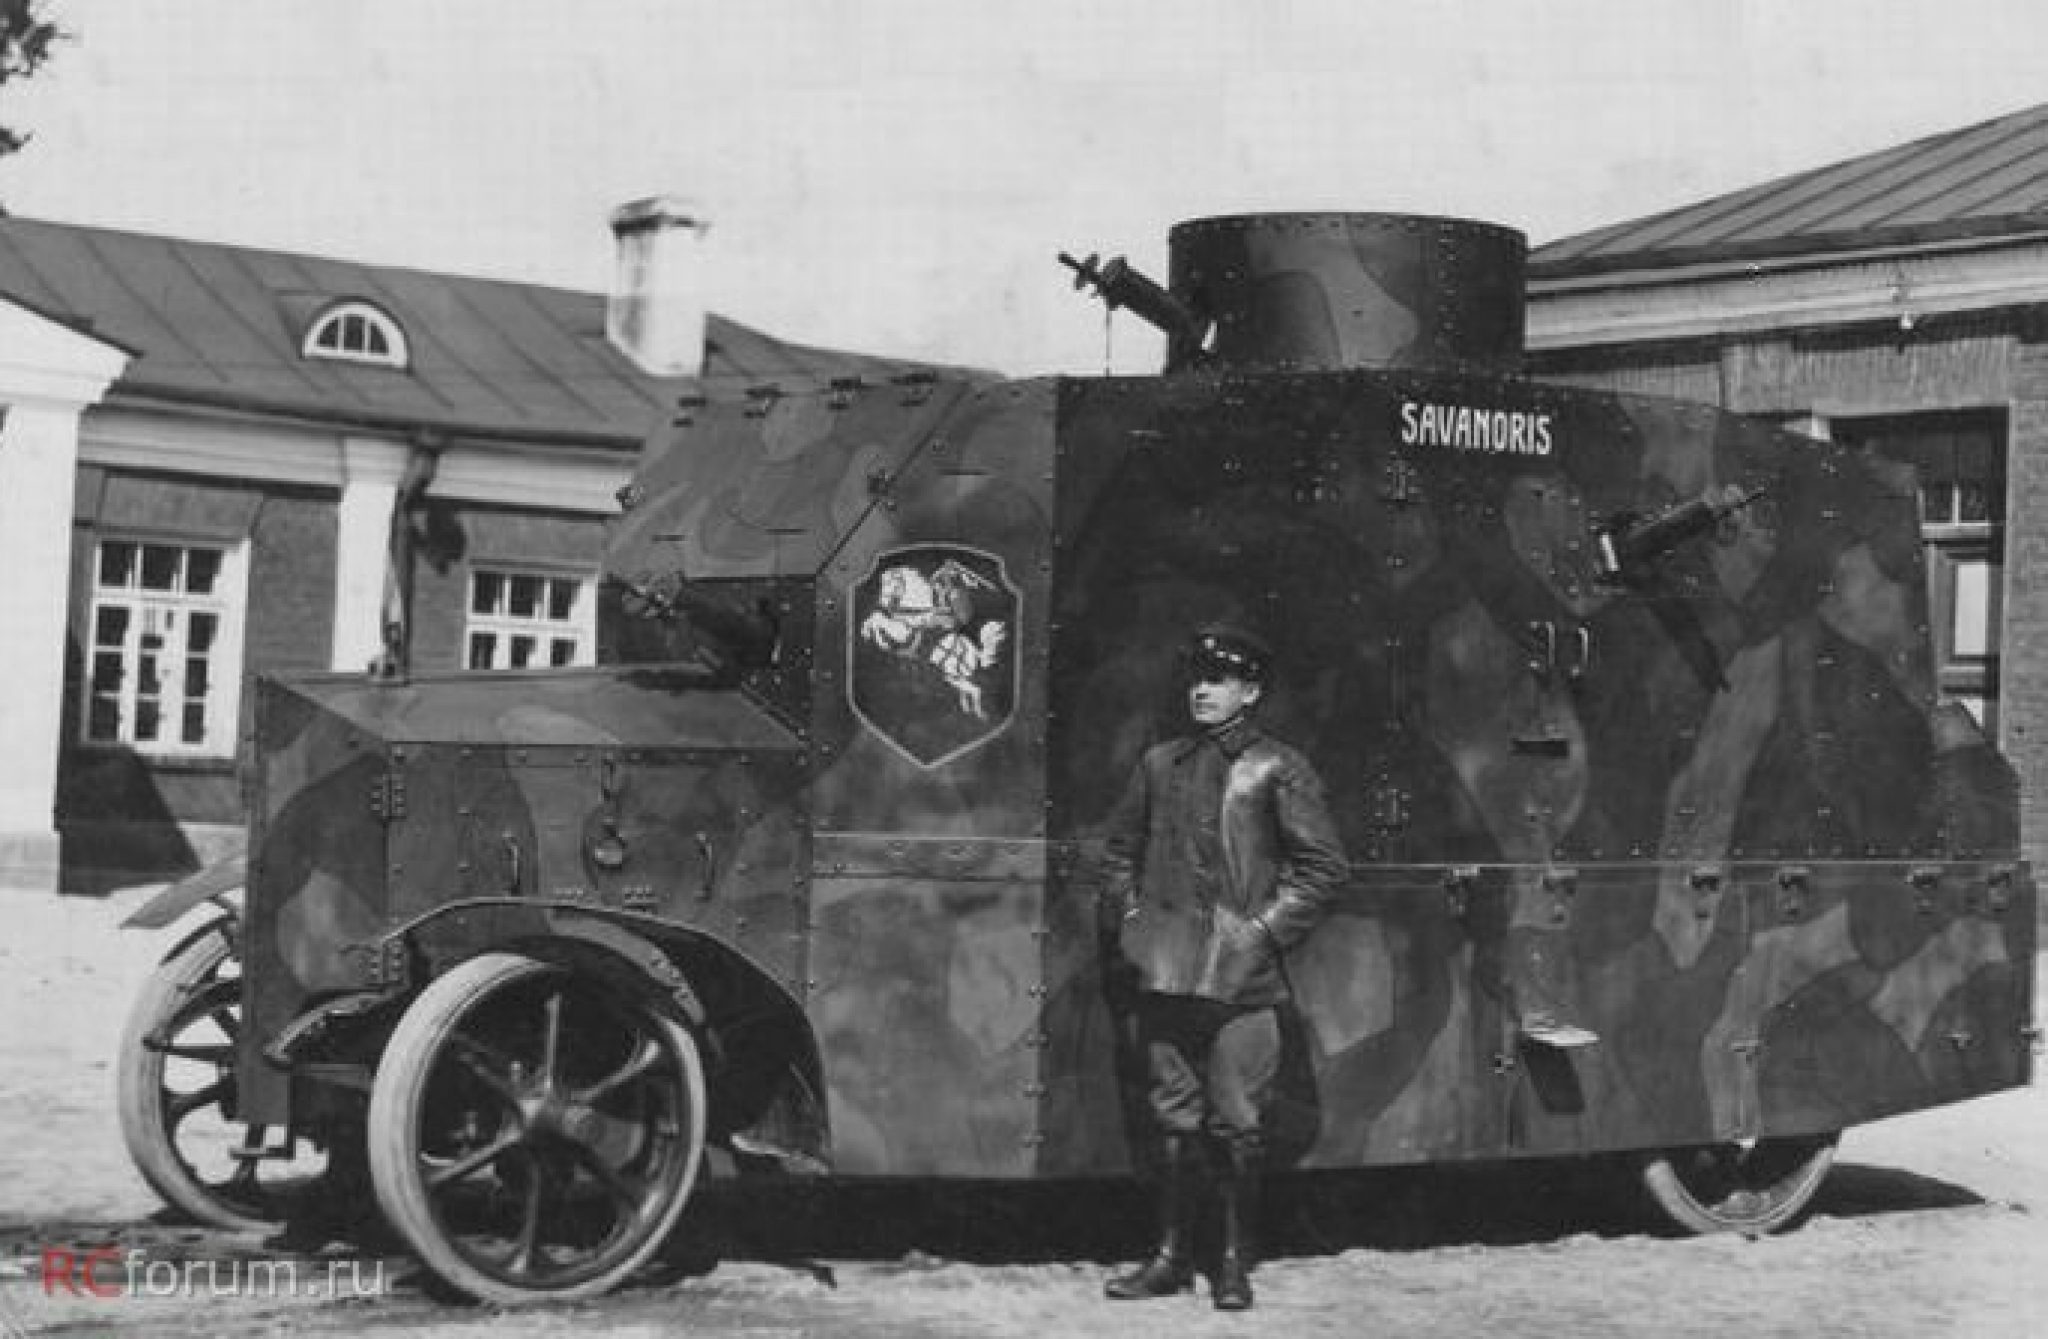 Б м немецкий. Бронеавтомобиль Эрхардт. Броневики Литвы 1920. Бронеавтомобиль Ehrhardt e-v/4. Бронемашина литовской армии в 1920.